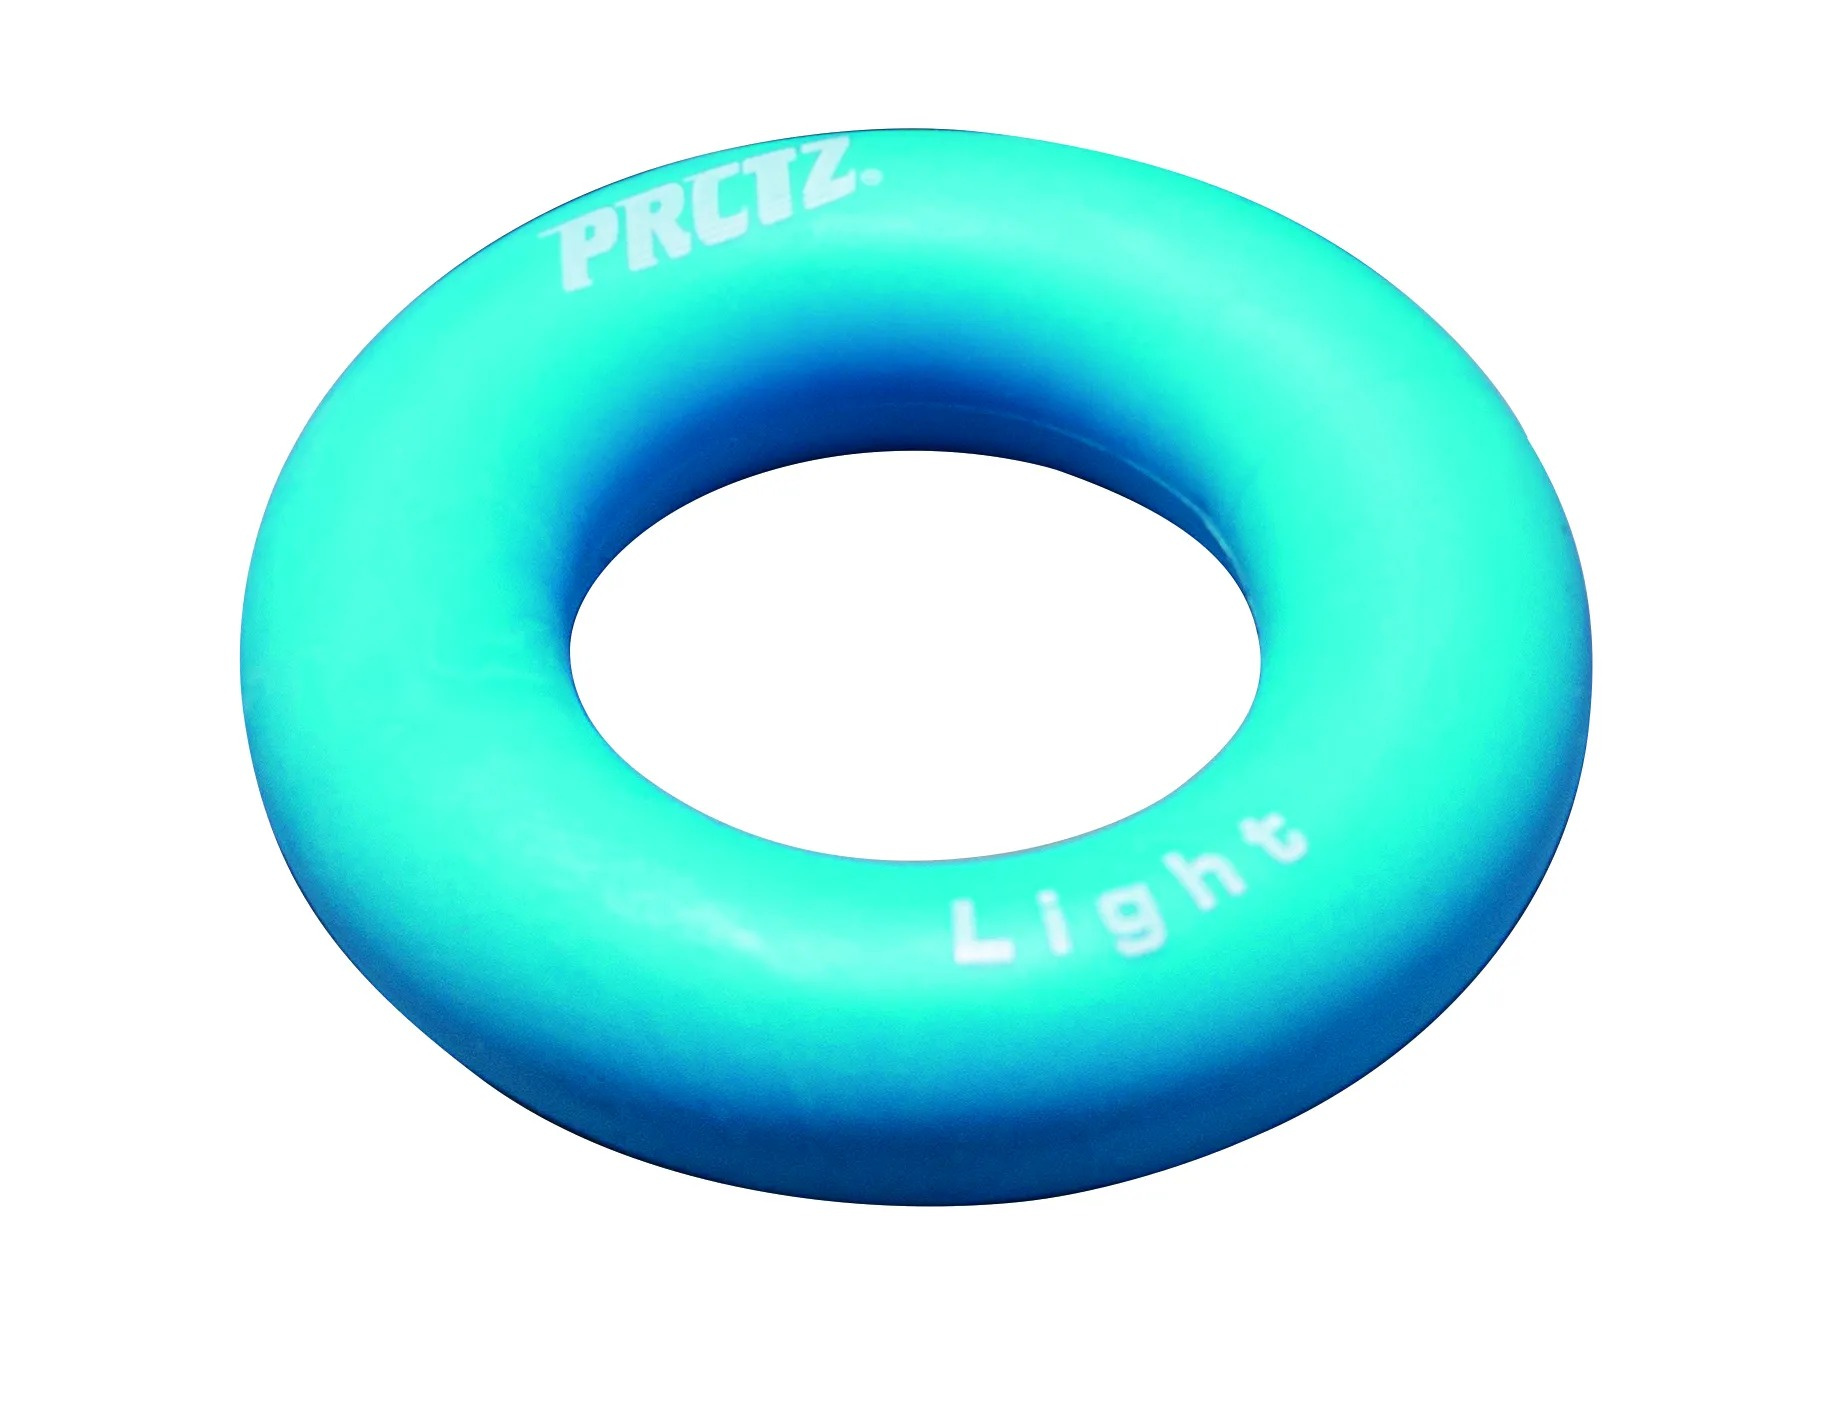 PRCTZ Power Gripping ring Light, слабое сопротивление из каталога кистевых эспандеров в Санкт-Петербурге по цене 490 ₽